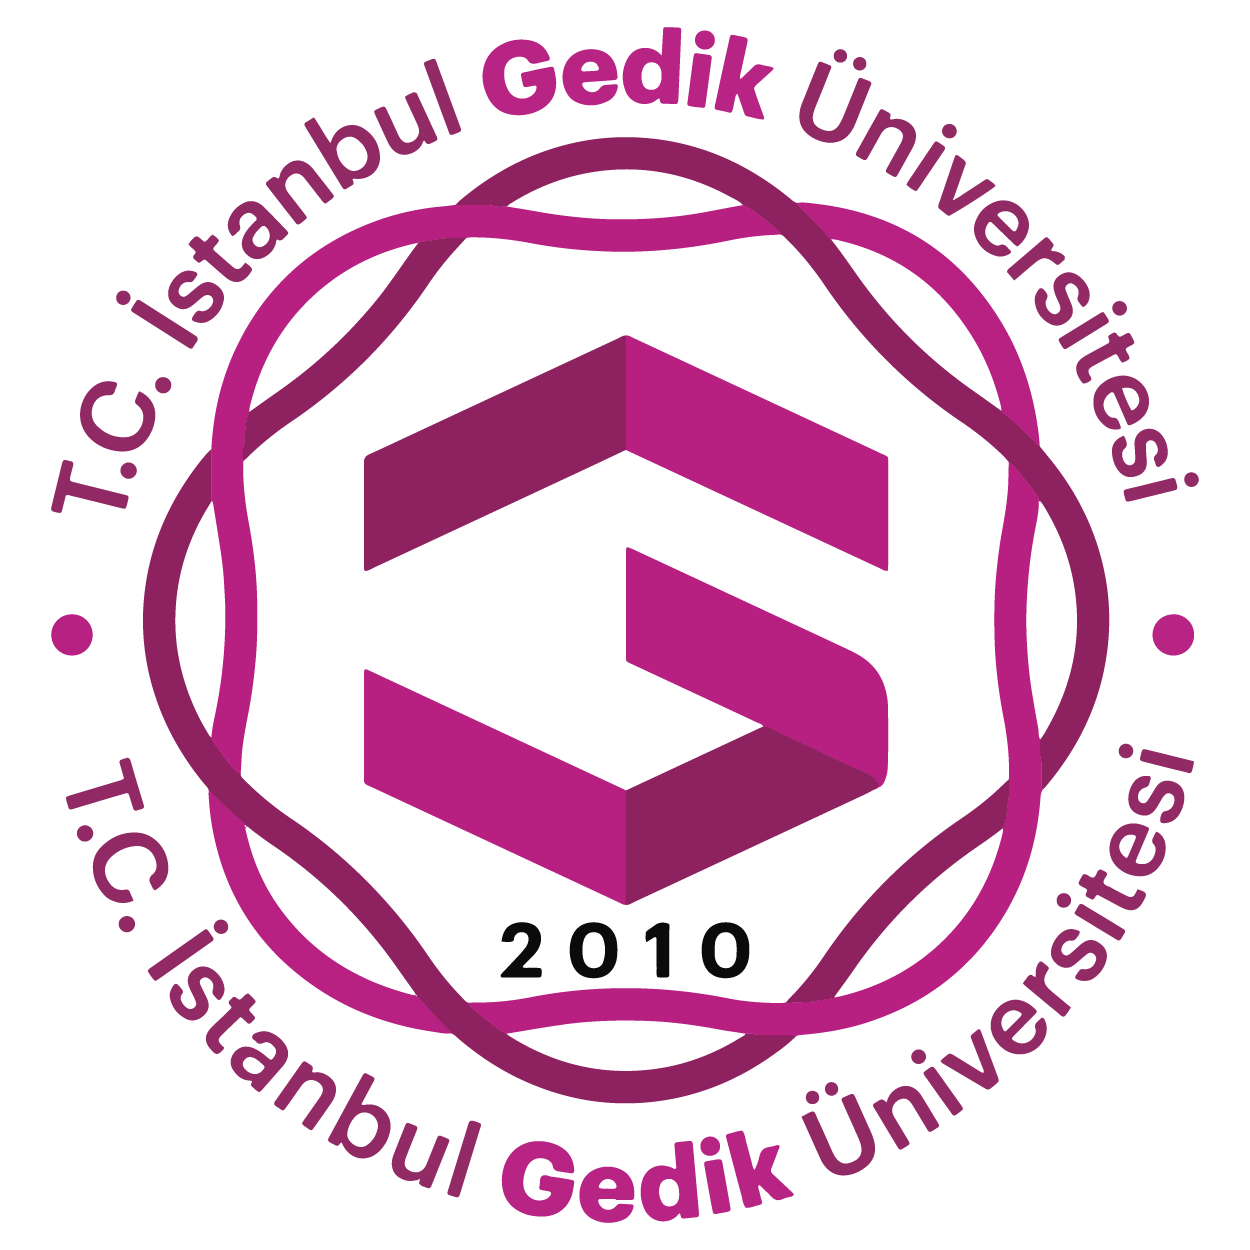 İstanbul Gedik Üniversitesi Logo png